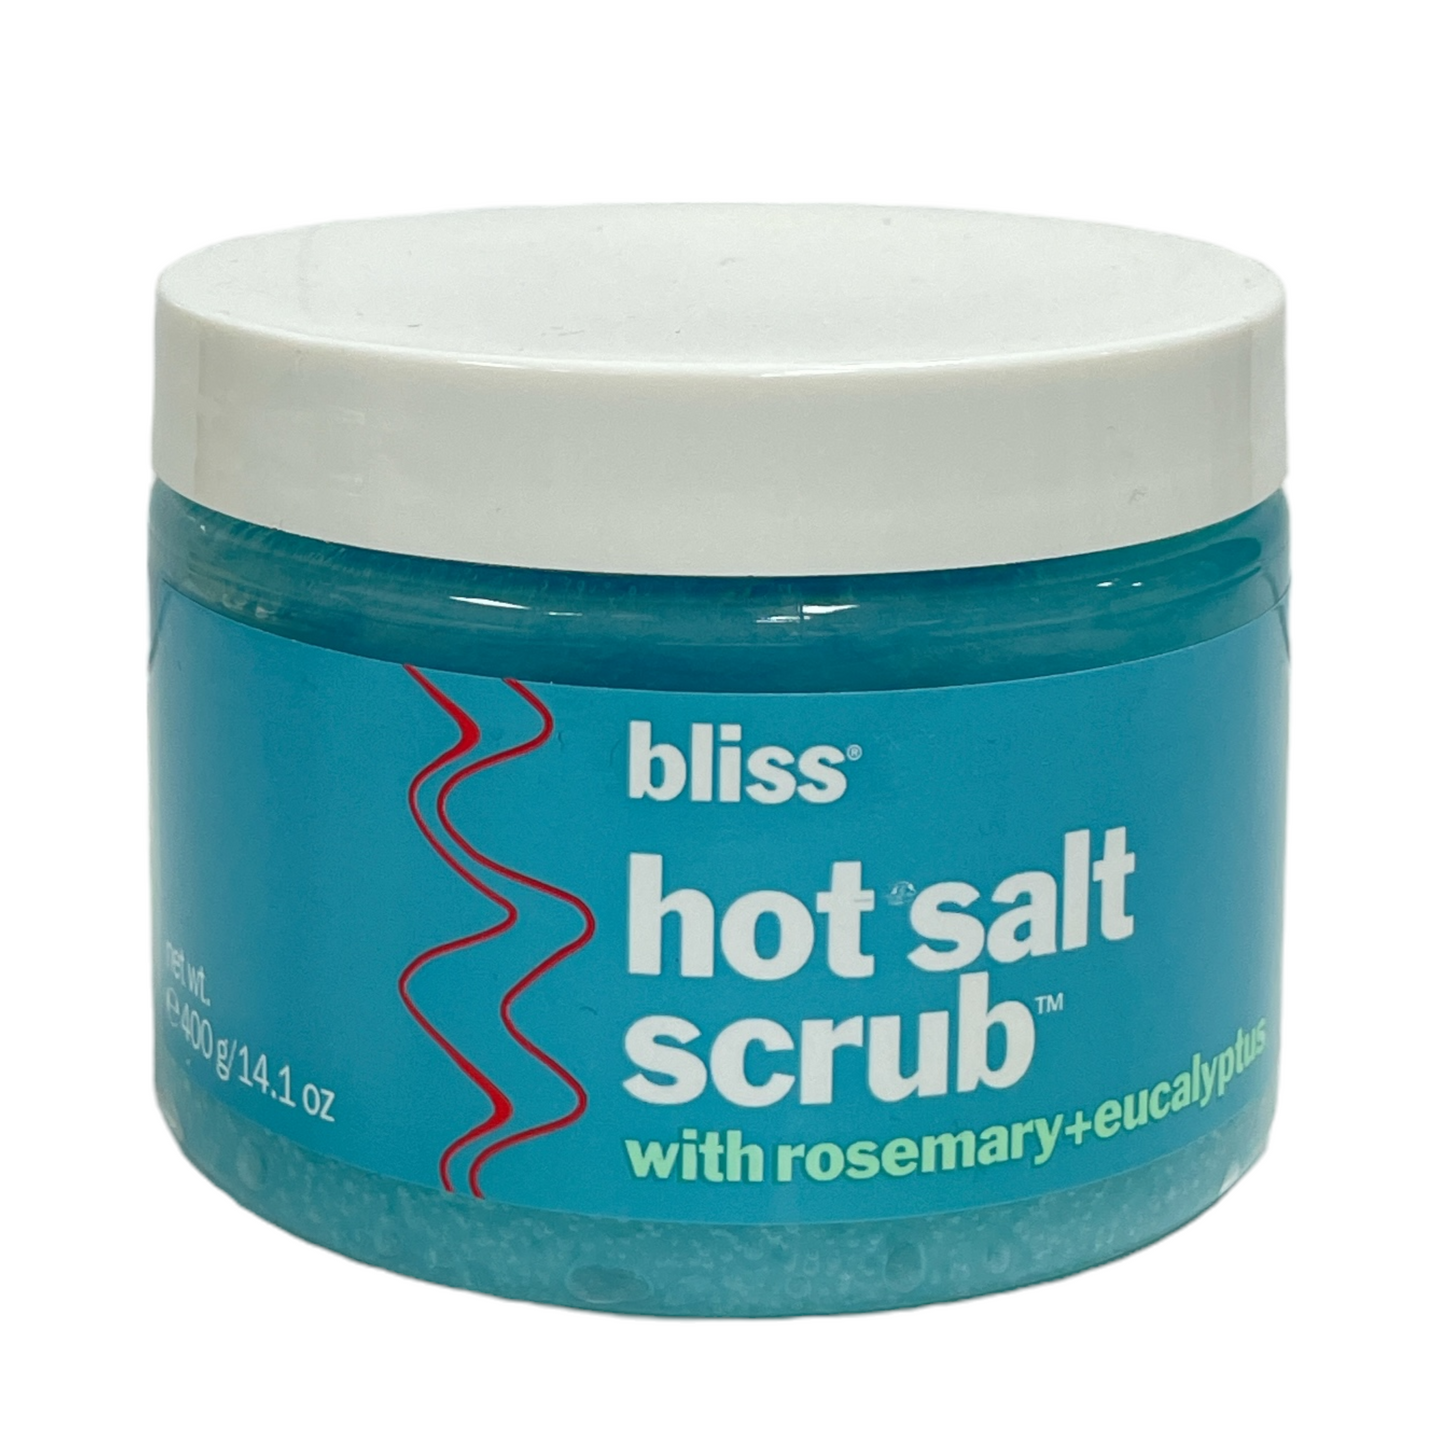 Bliss Hot Salt Scrub with Rosemary + Eucalyptus (400g / 14.1oz)